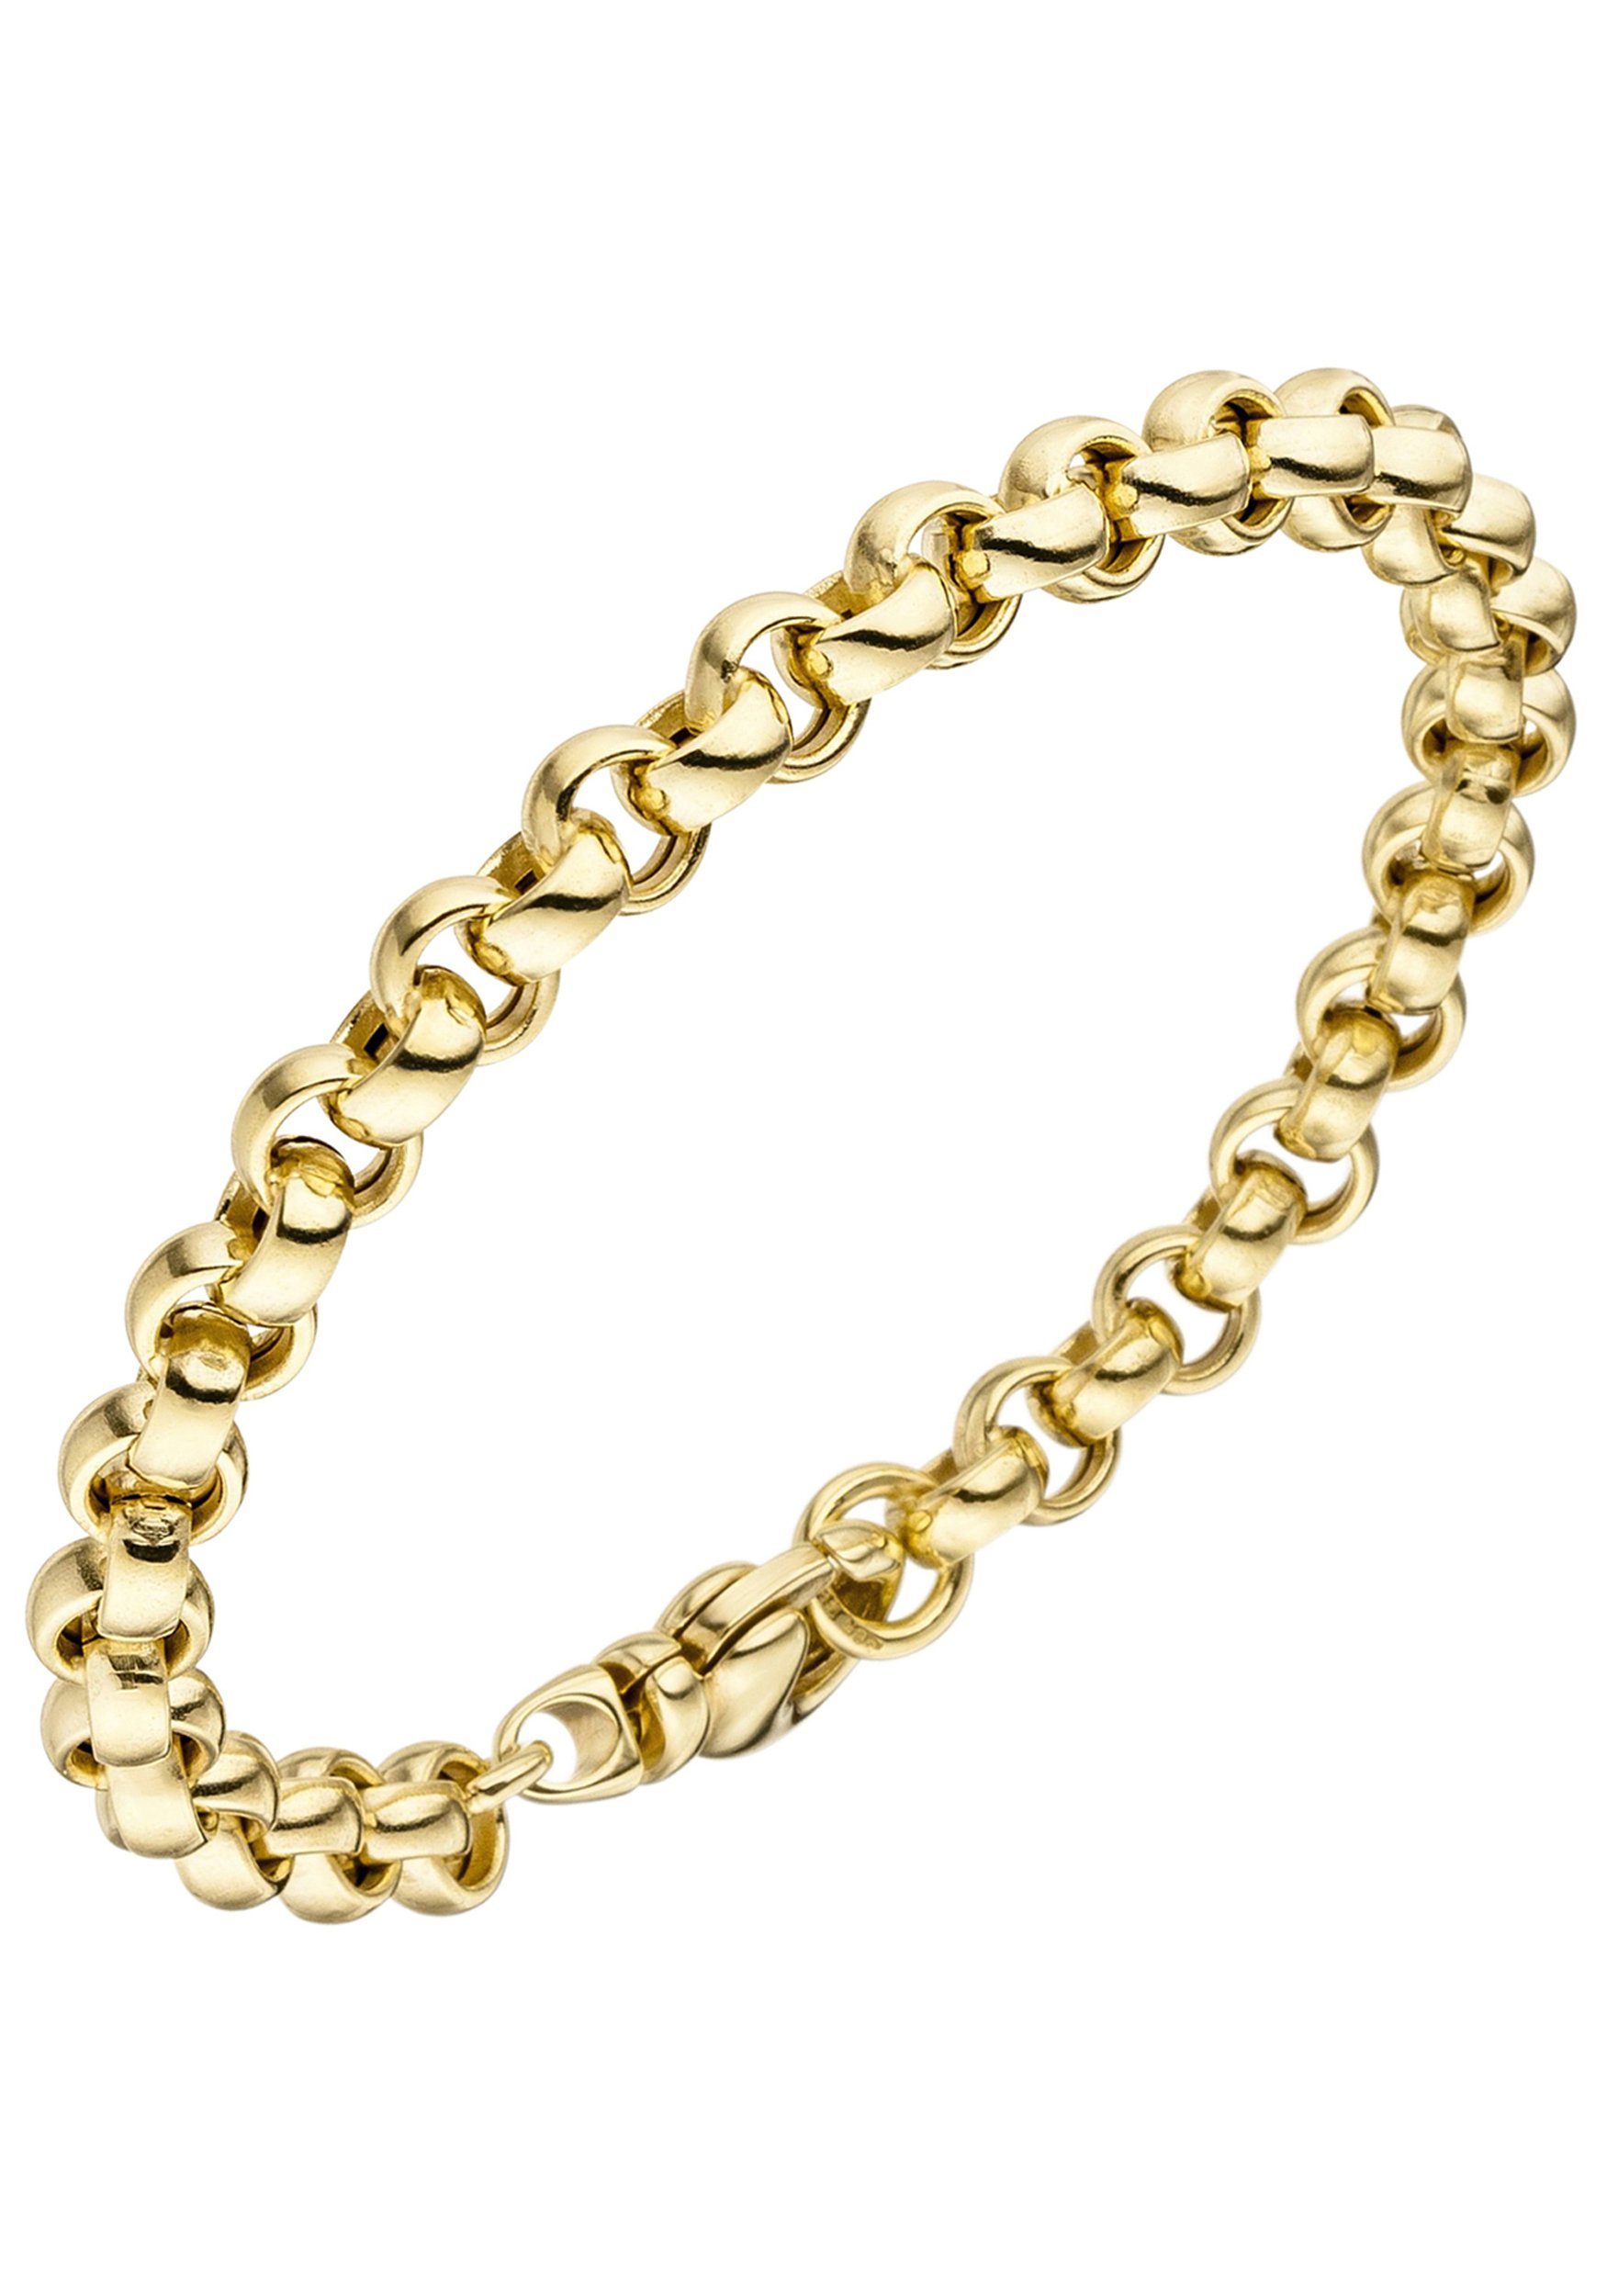 JOBO Goldarmband, Erbsarmband 585 Gold 19 cm